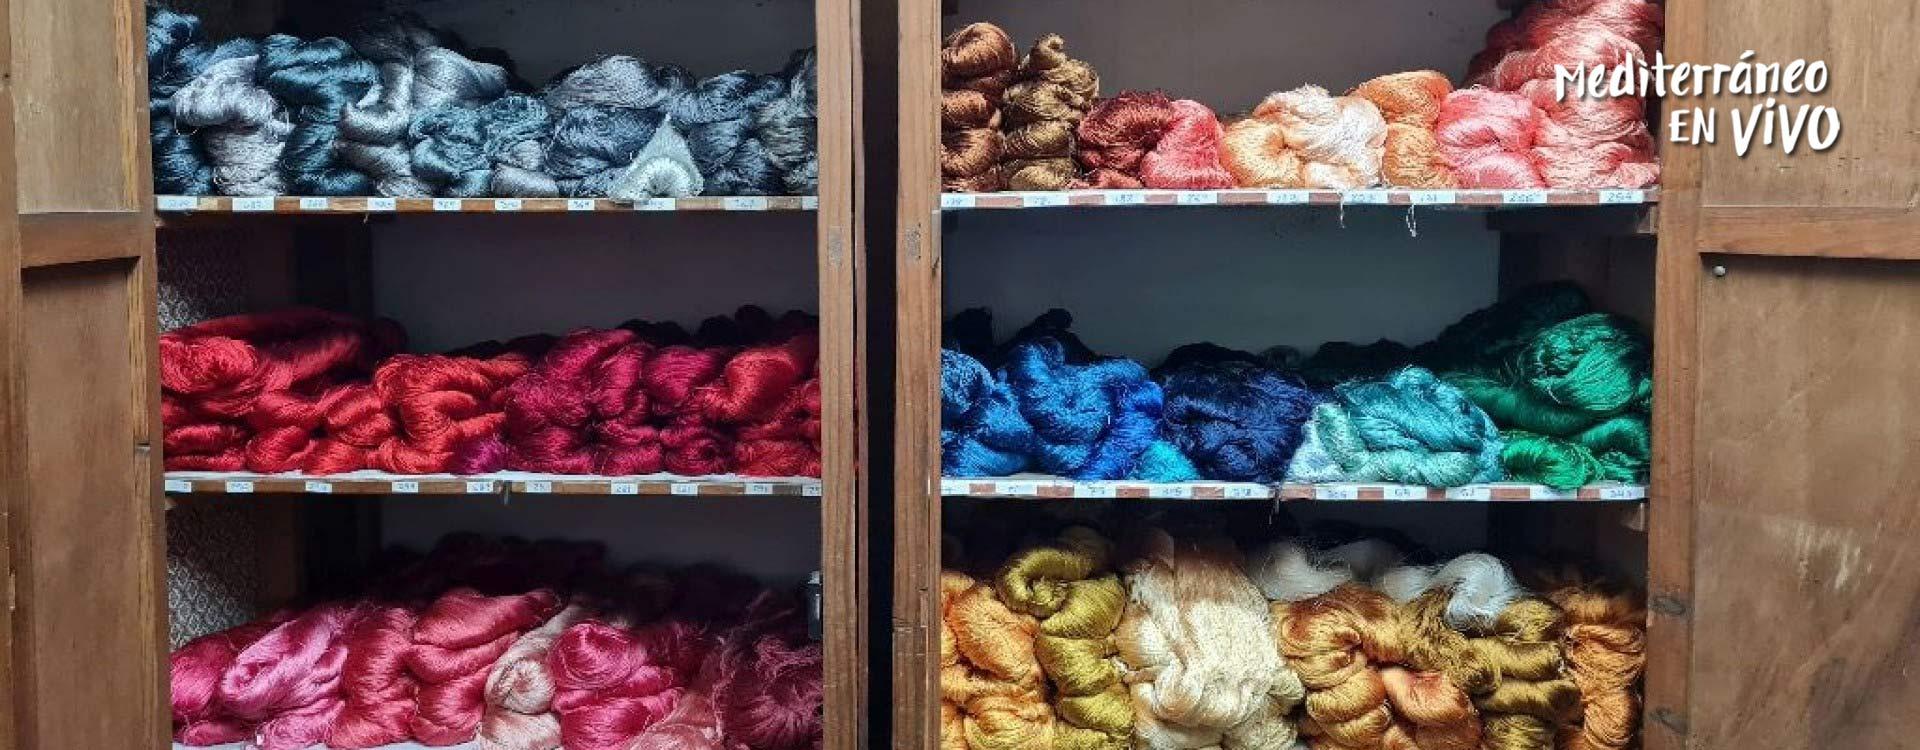 Imatge de fils de seda de diferents colors	